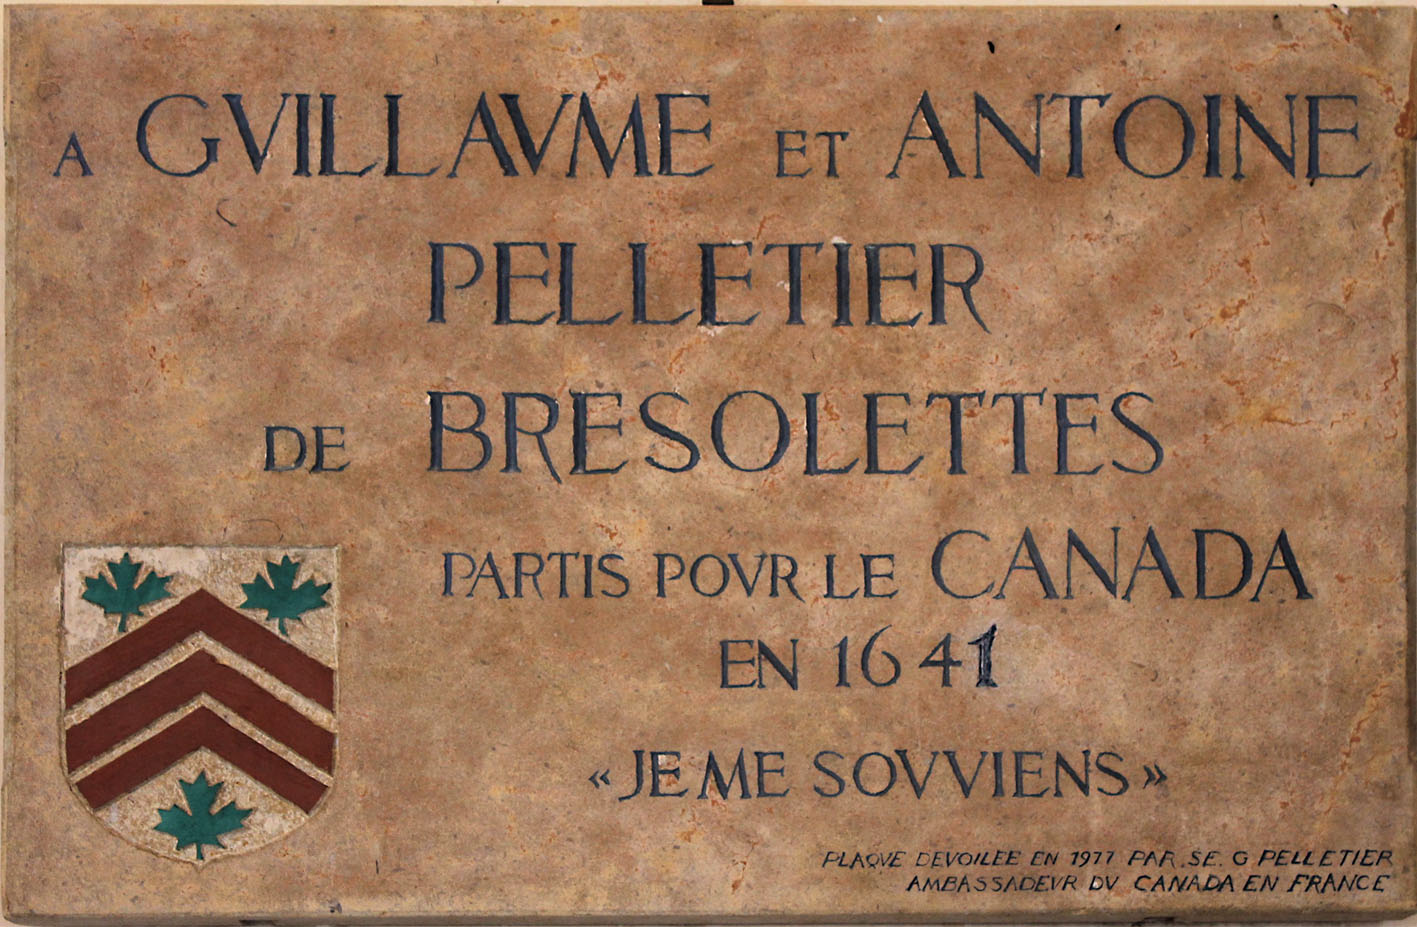 Commemorative plaque in Bresolettes